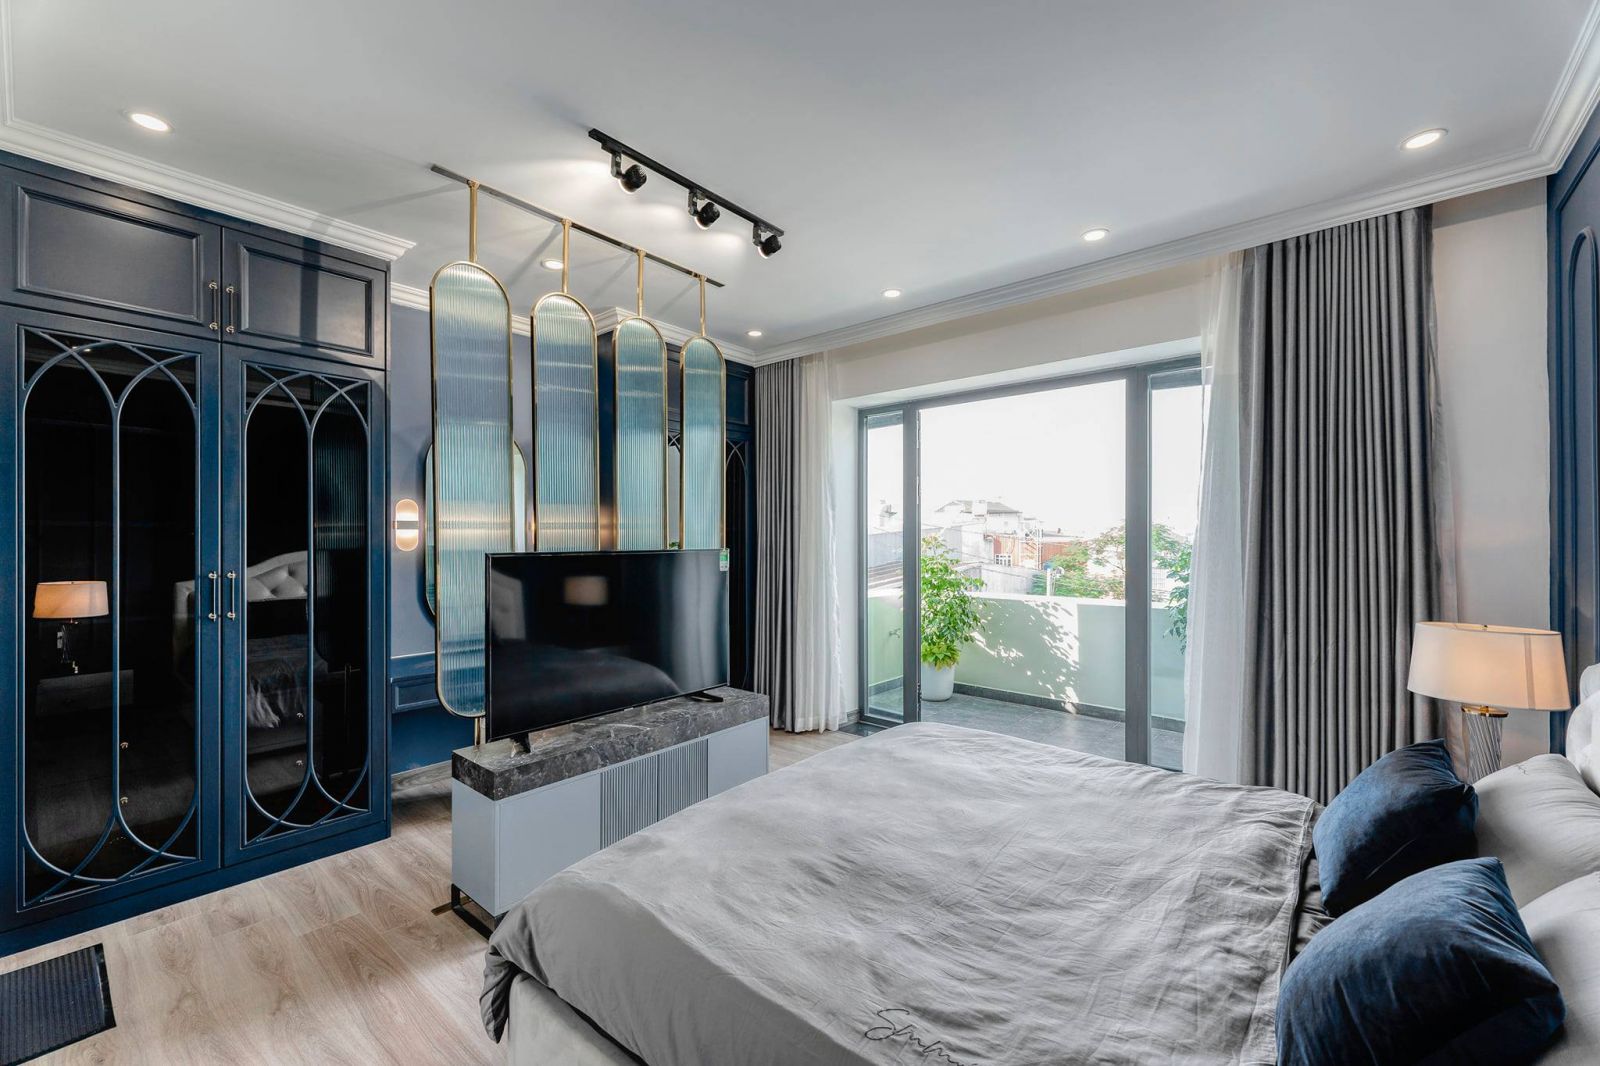 Phòng ngủ master được thiết kế với tông màu trắng - xanh vô cùng tinh tế, ngoài ra được nhấn nhá thêm một vài chi tiết mạ vàng làm tăng thêm vẻ sang trọng.